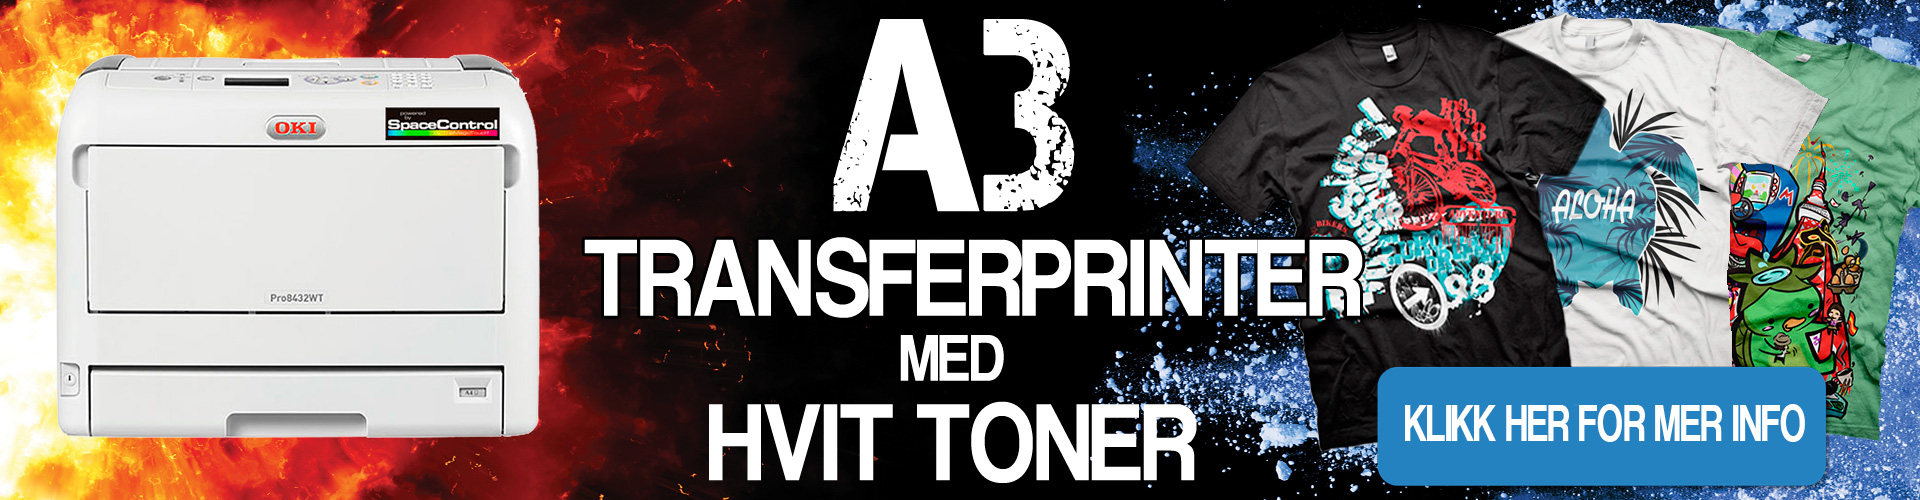 A3 Transferprinter med hvit toner banner